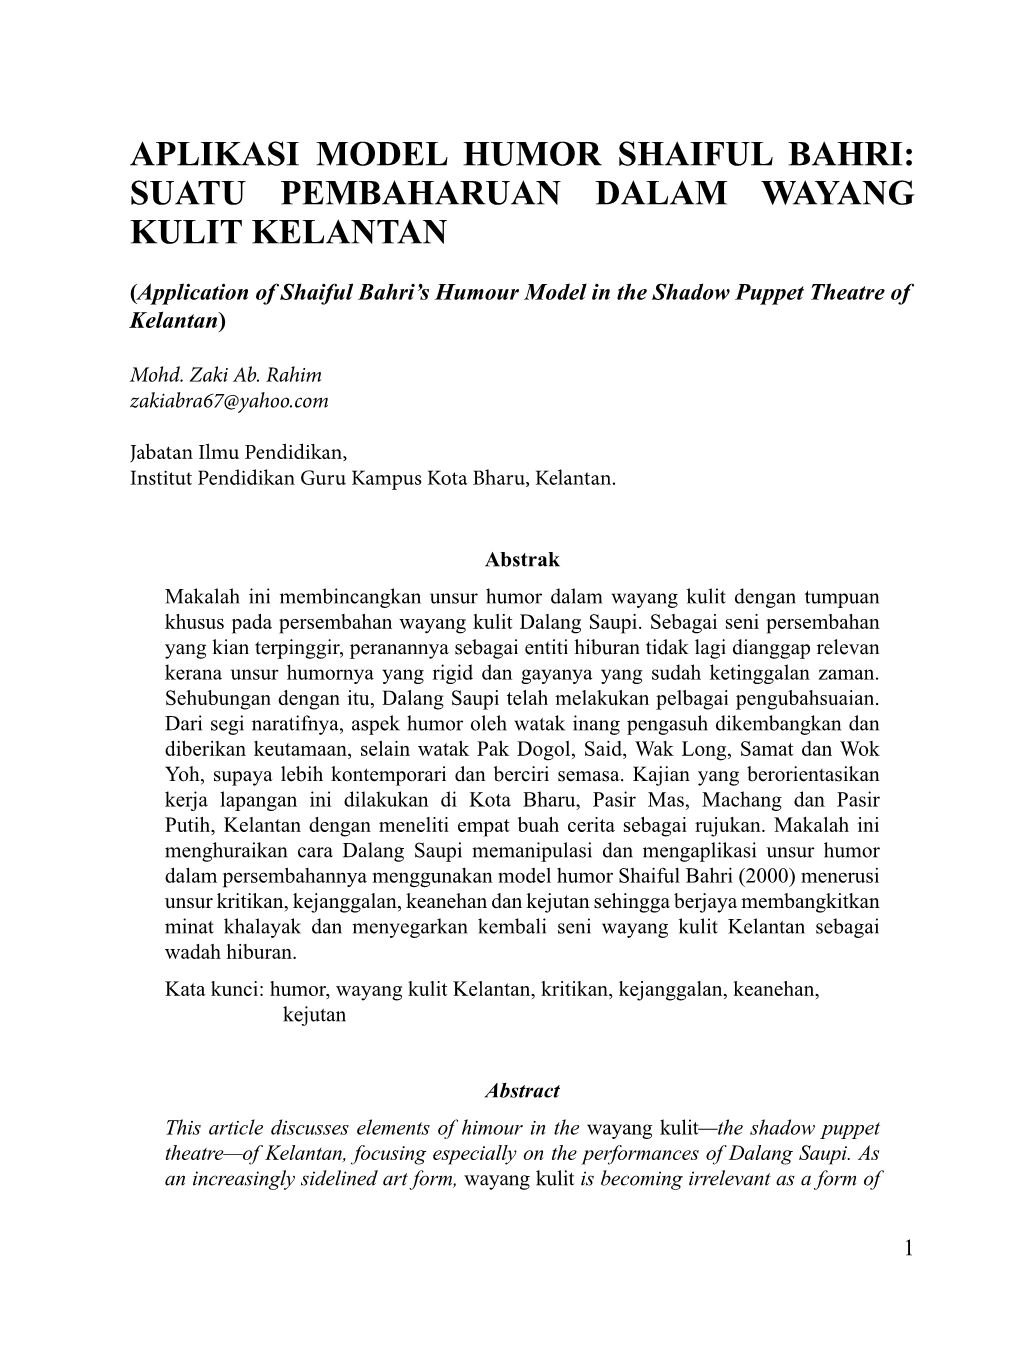 Aplikasi Model Humor Shaiful Bahri: Suatu Pembaharuan Dalam Wayang Kulit Kelantan